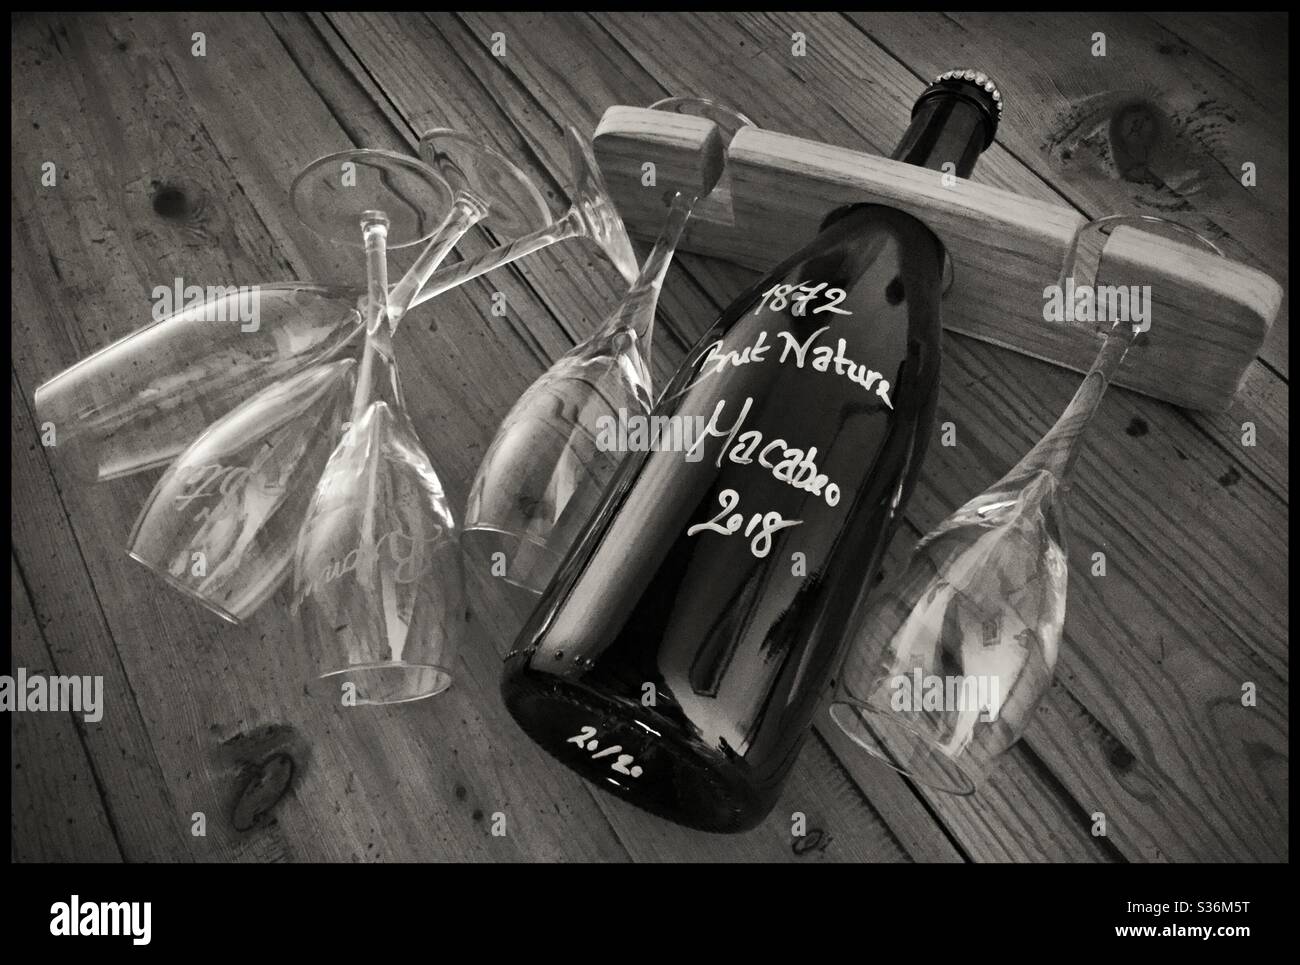 Eine Flasche Sekt und fünf Gläser - an abwesende Freunde, Katalonien, Spanien. Stockfoto